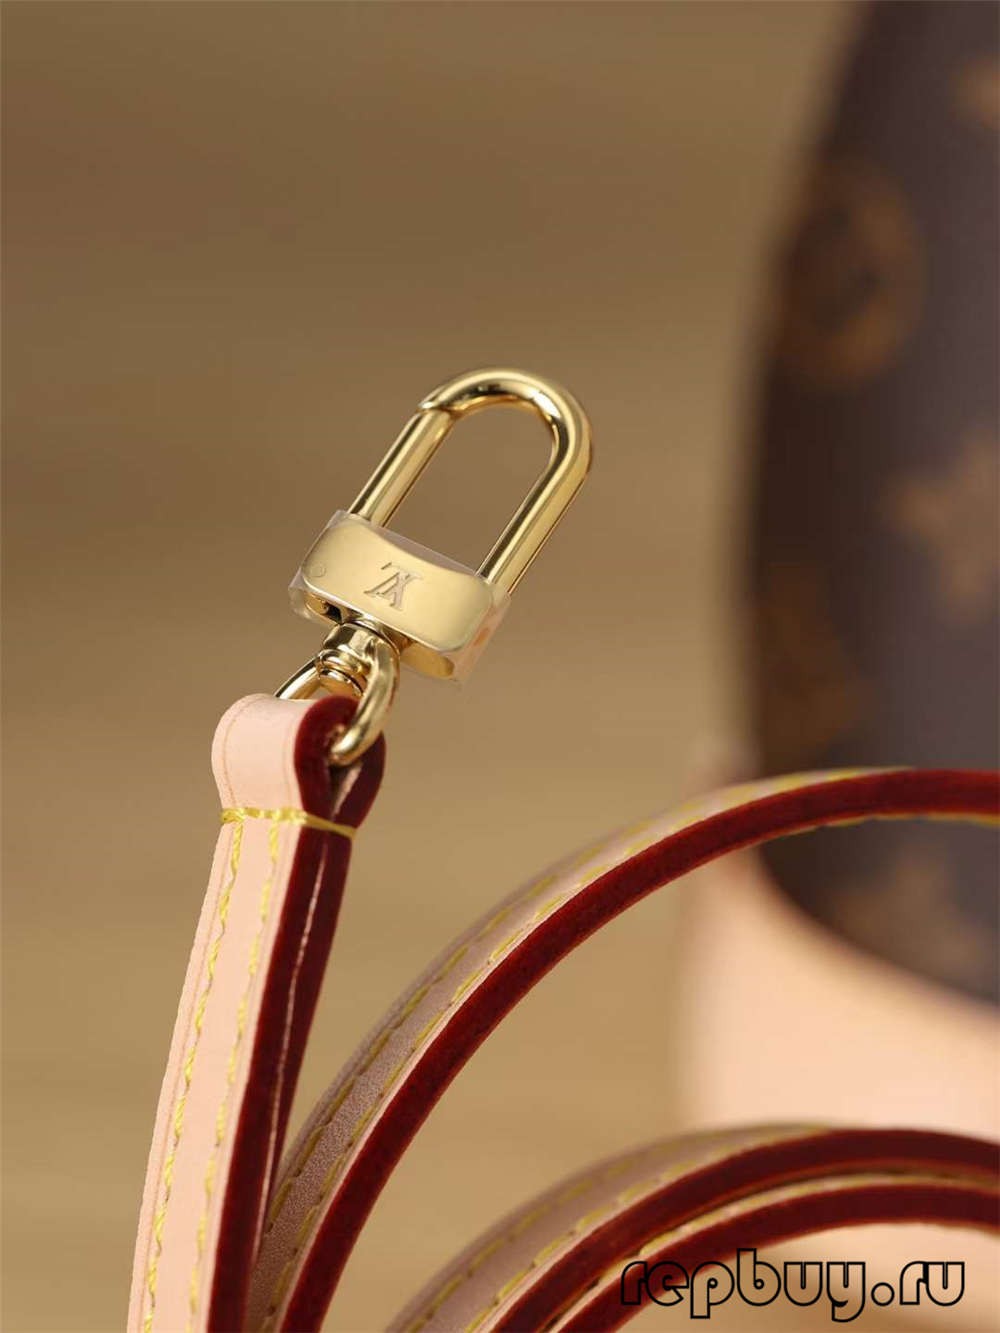 Louis Vuitton M53152 Alma BB replikaväskor av högsta kvalitet (2022 uppdaterad)-Bästa kvalitet Fake Louis Vuitton Bag Online Store, Replica designer bag ru